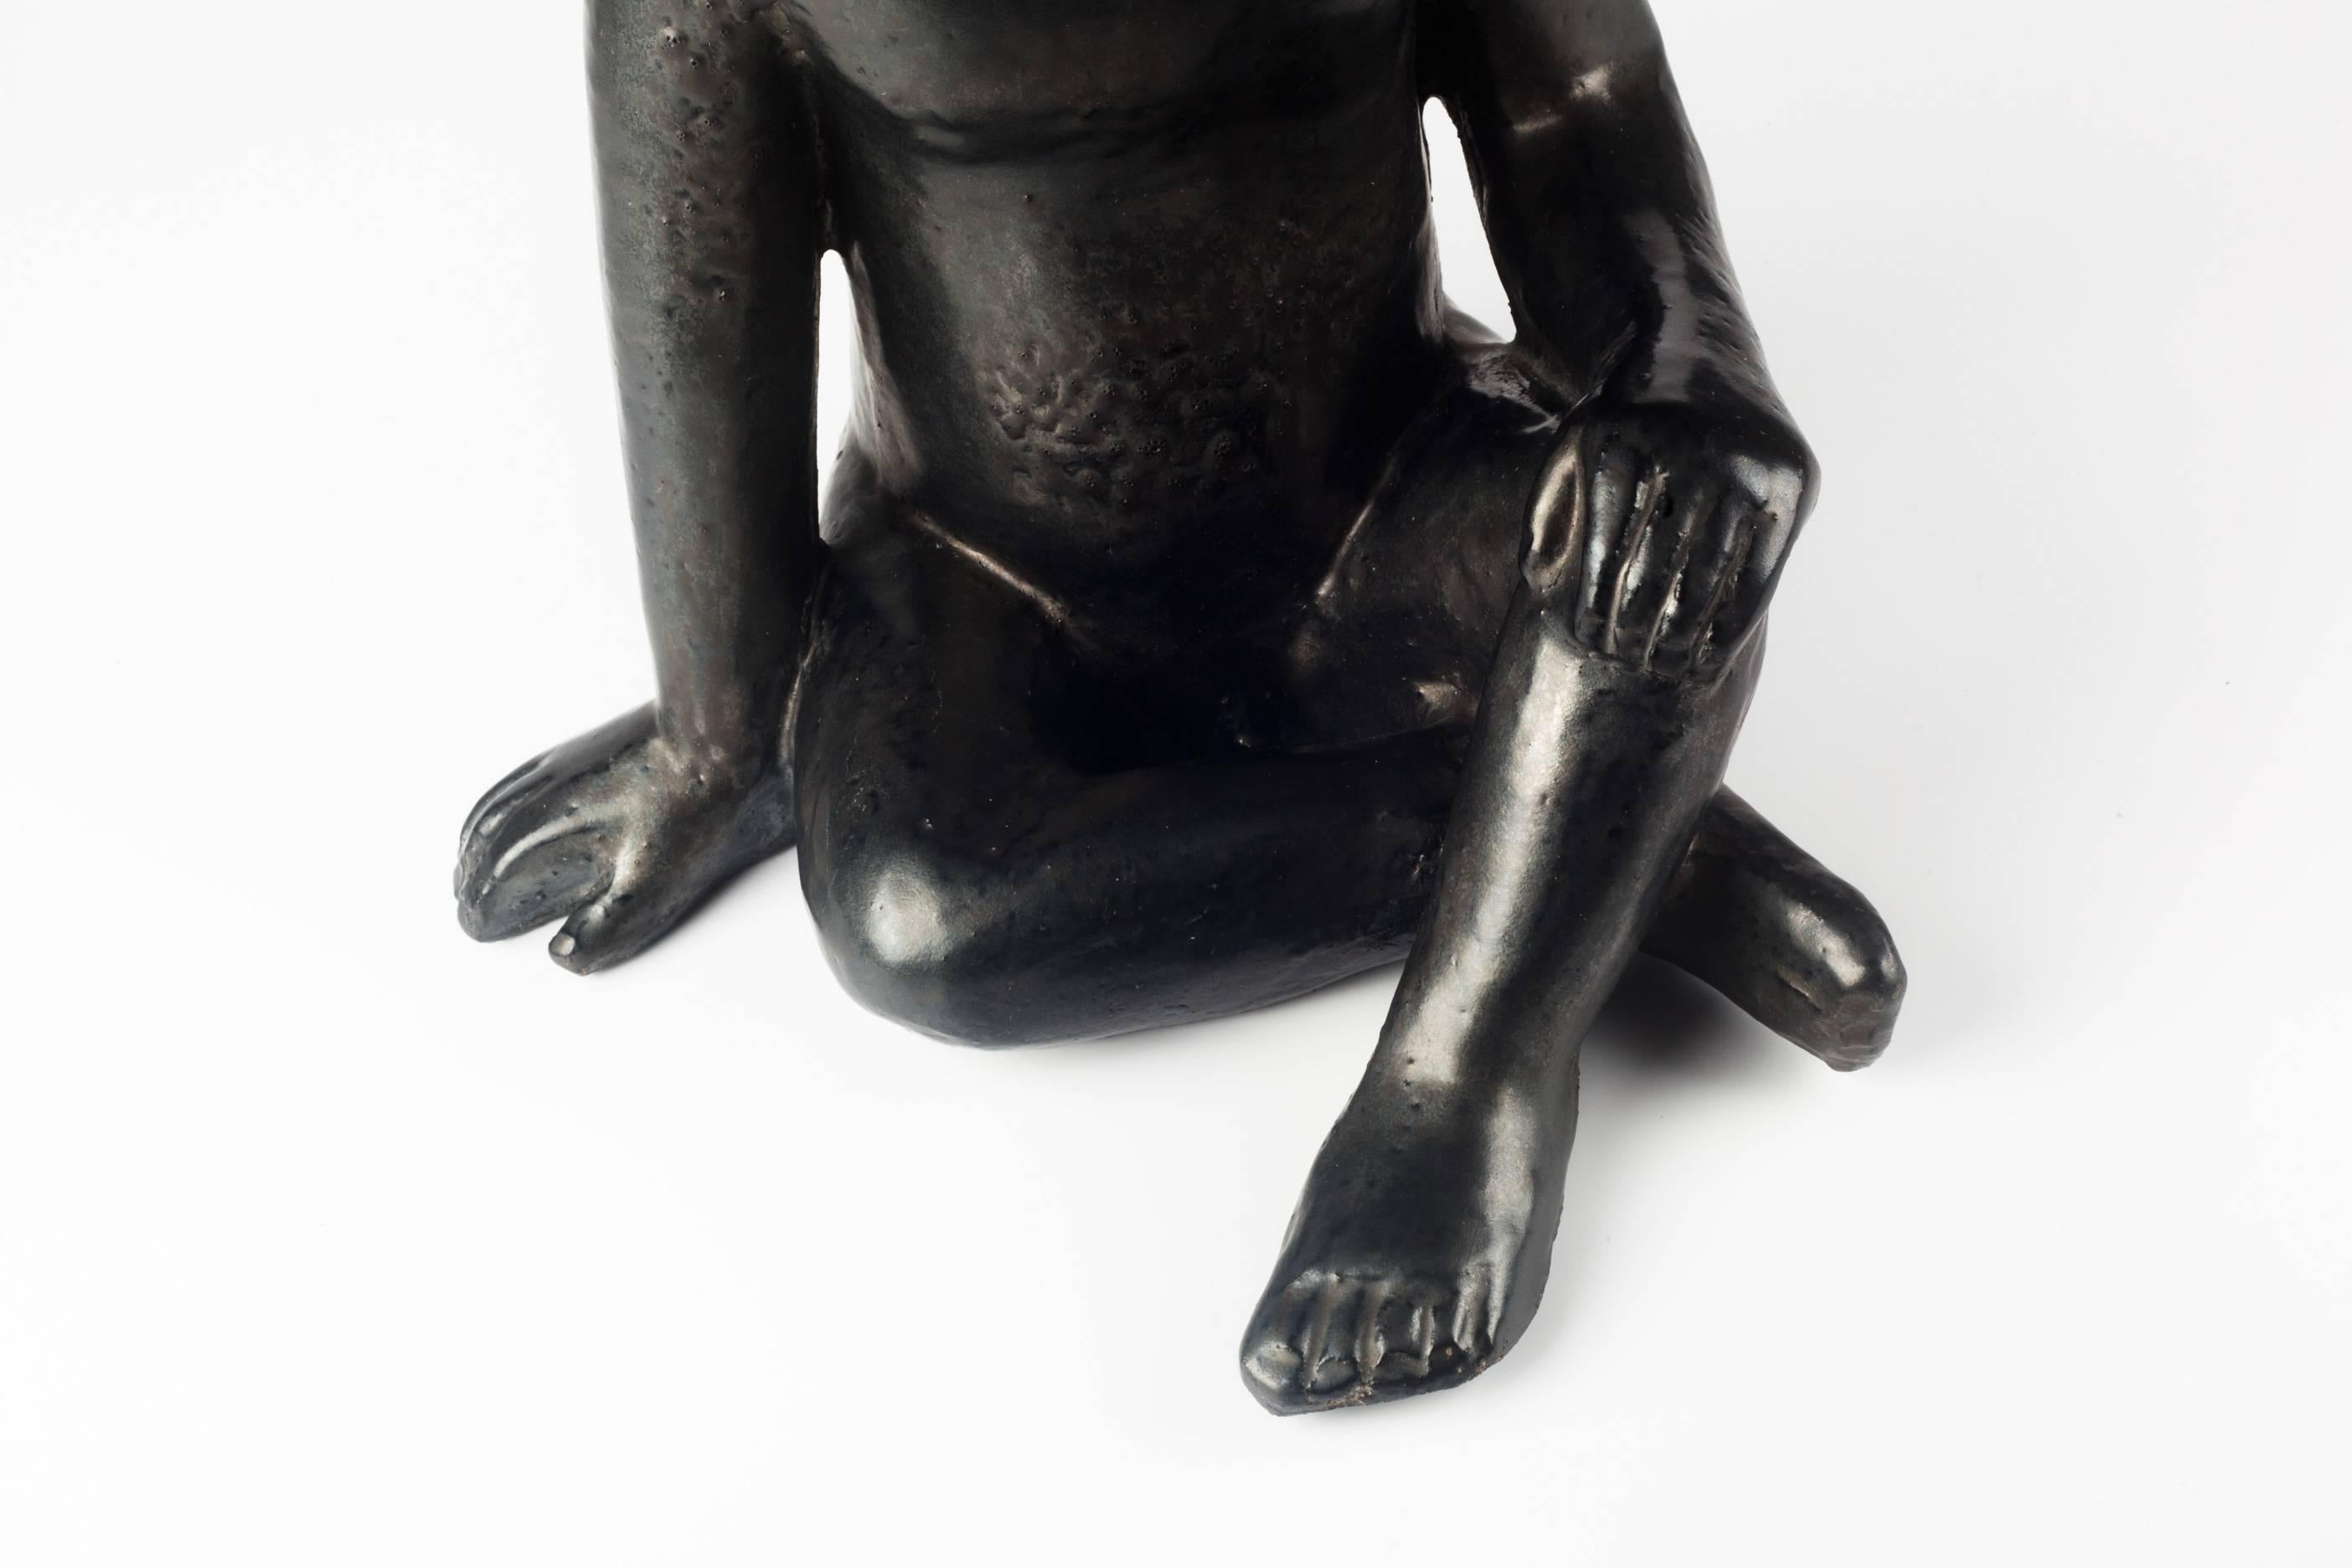 Clay Child Ceramic Sculpture by Perignem Amphora, Black, Belgium, 1970s